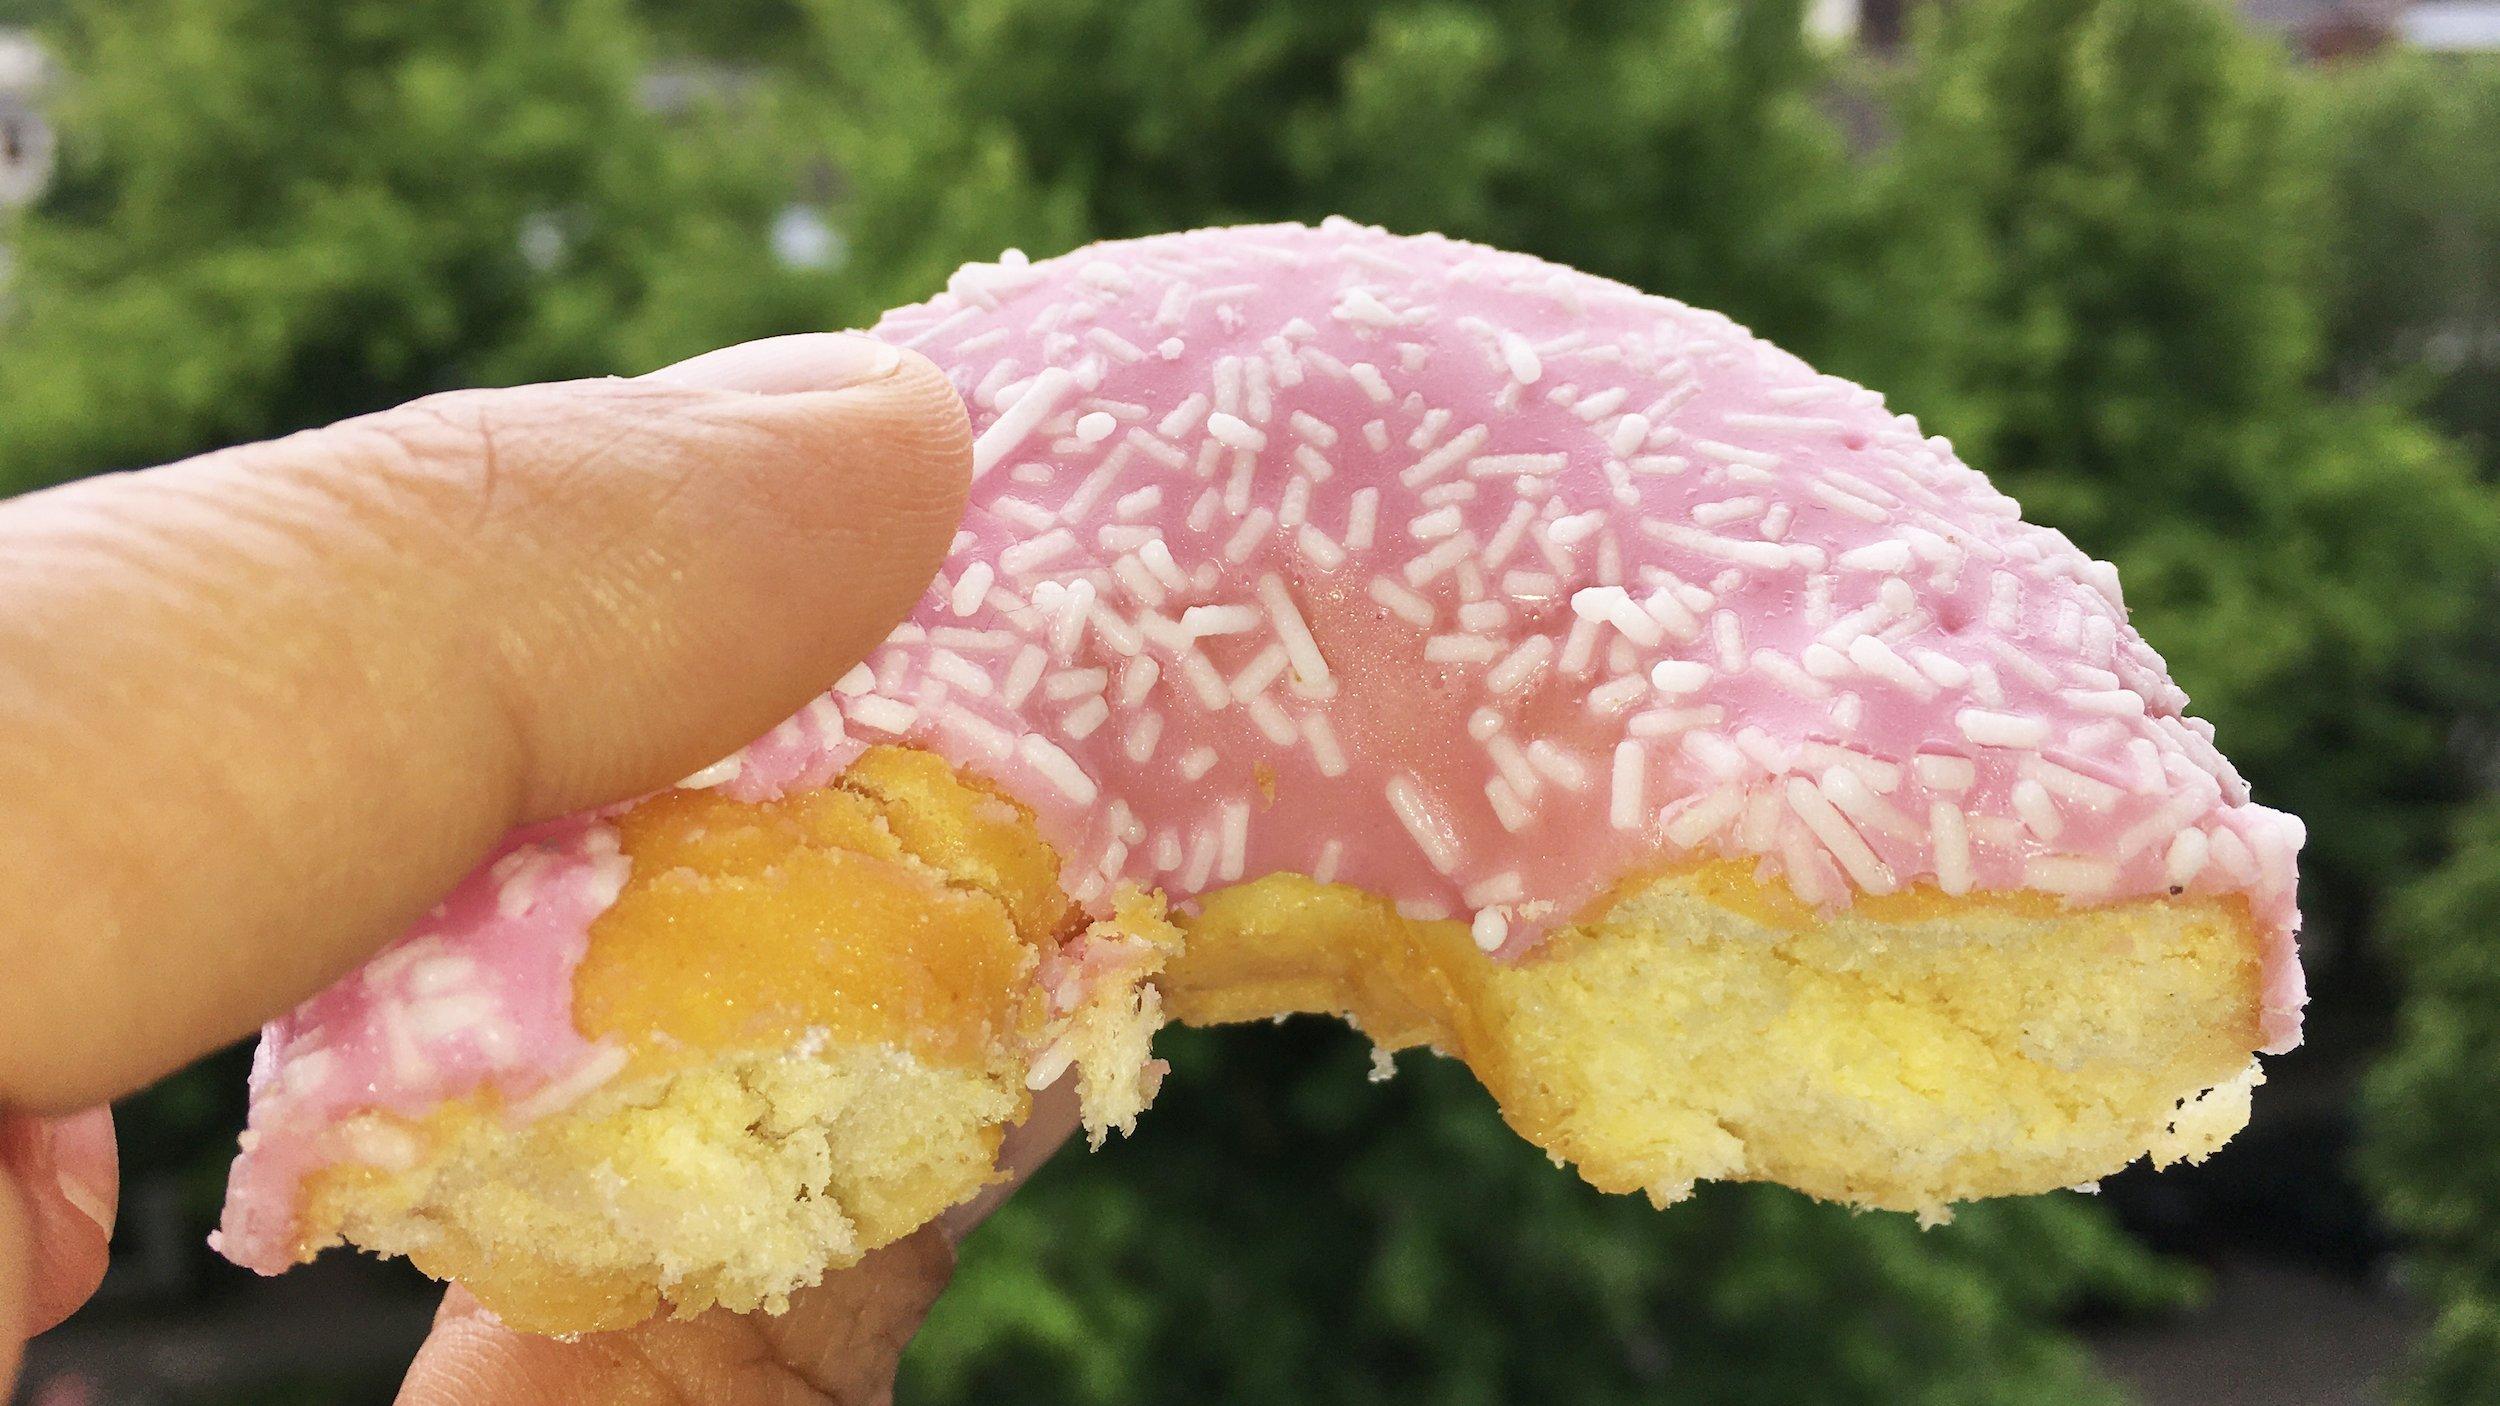 Zwei Finger halten einen angebissenen Donut vor die Kamera, der mit rosa Zuckerguss verziert ist. Im Hintergrund sind unscharf Bäume zu erkennen.